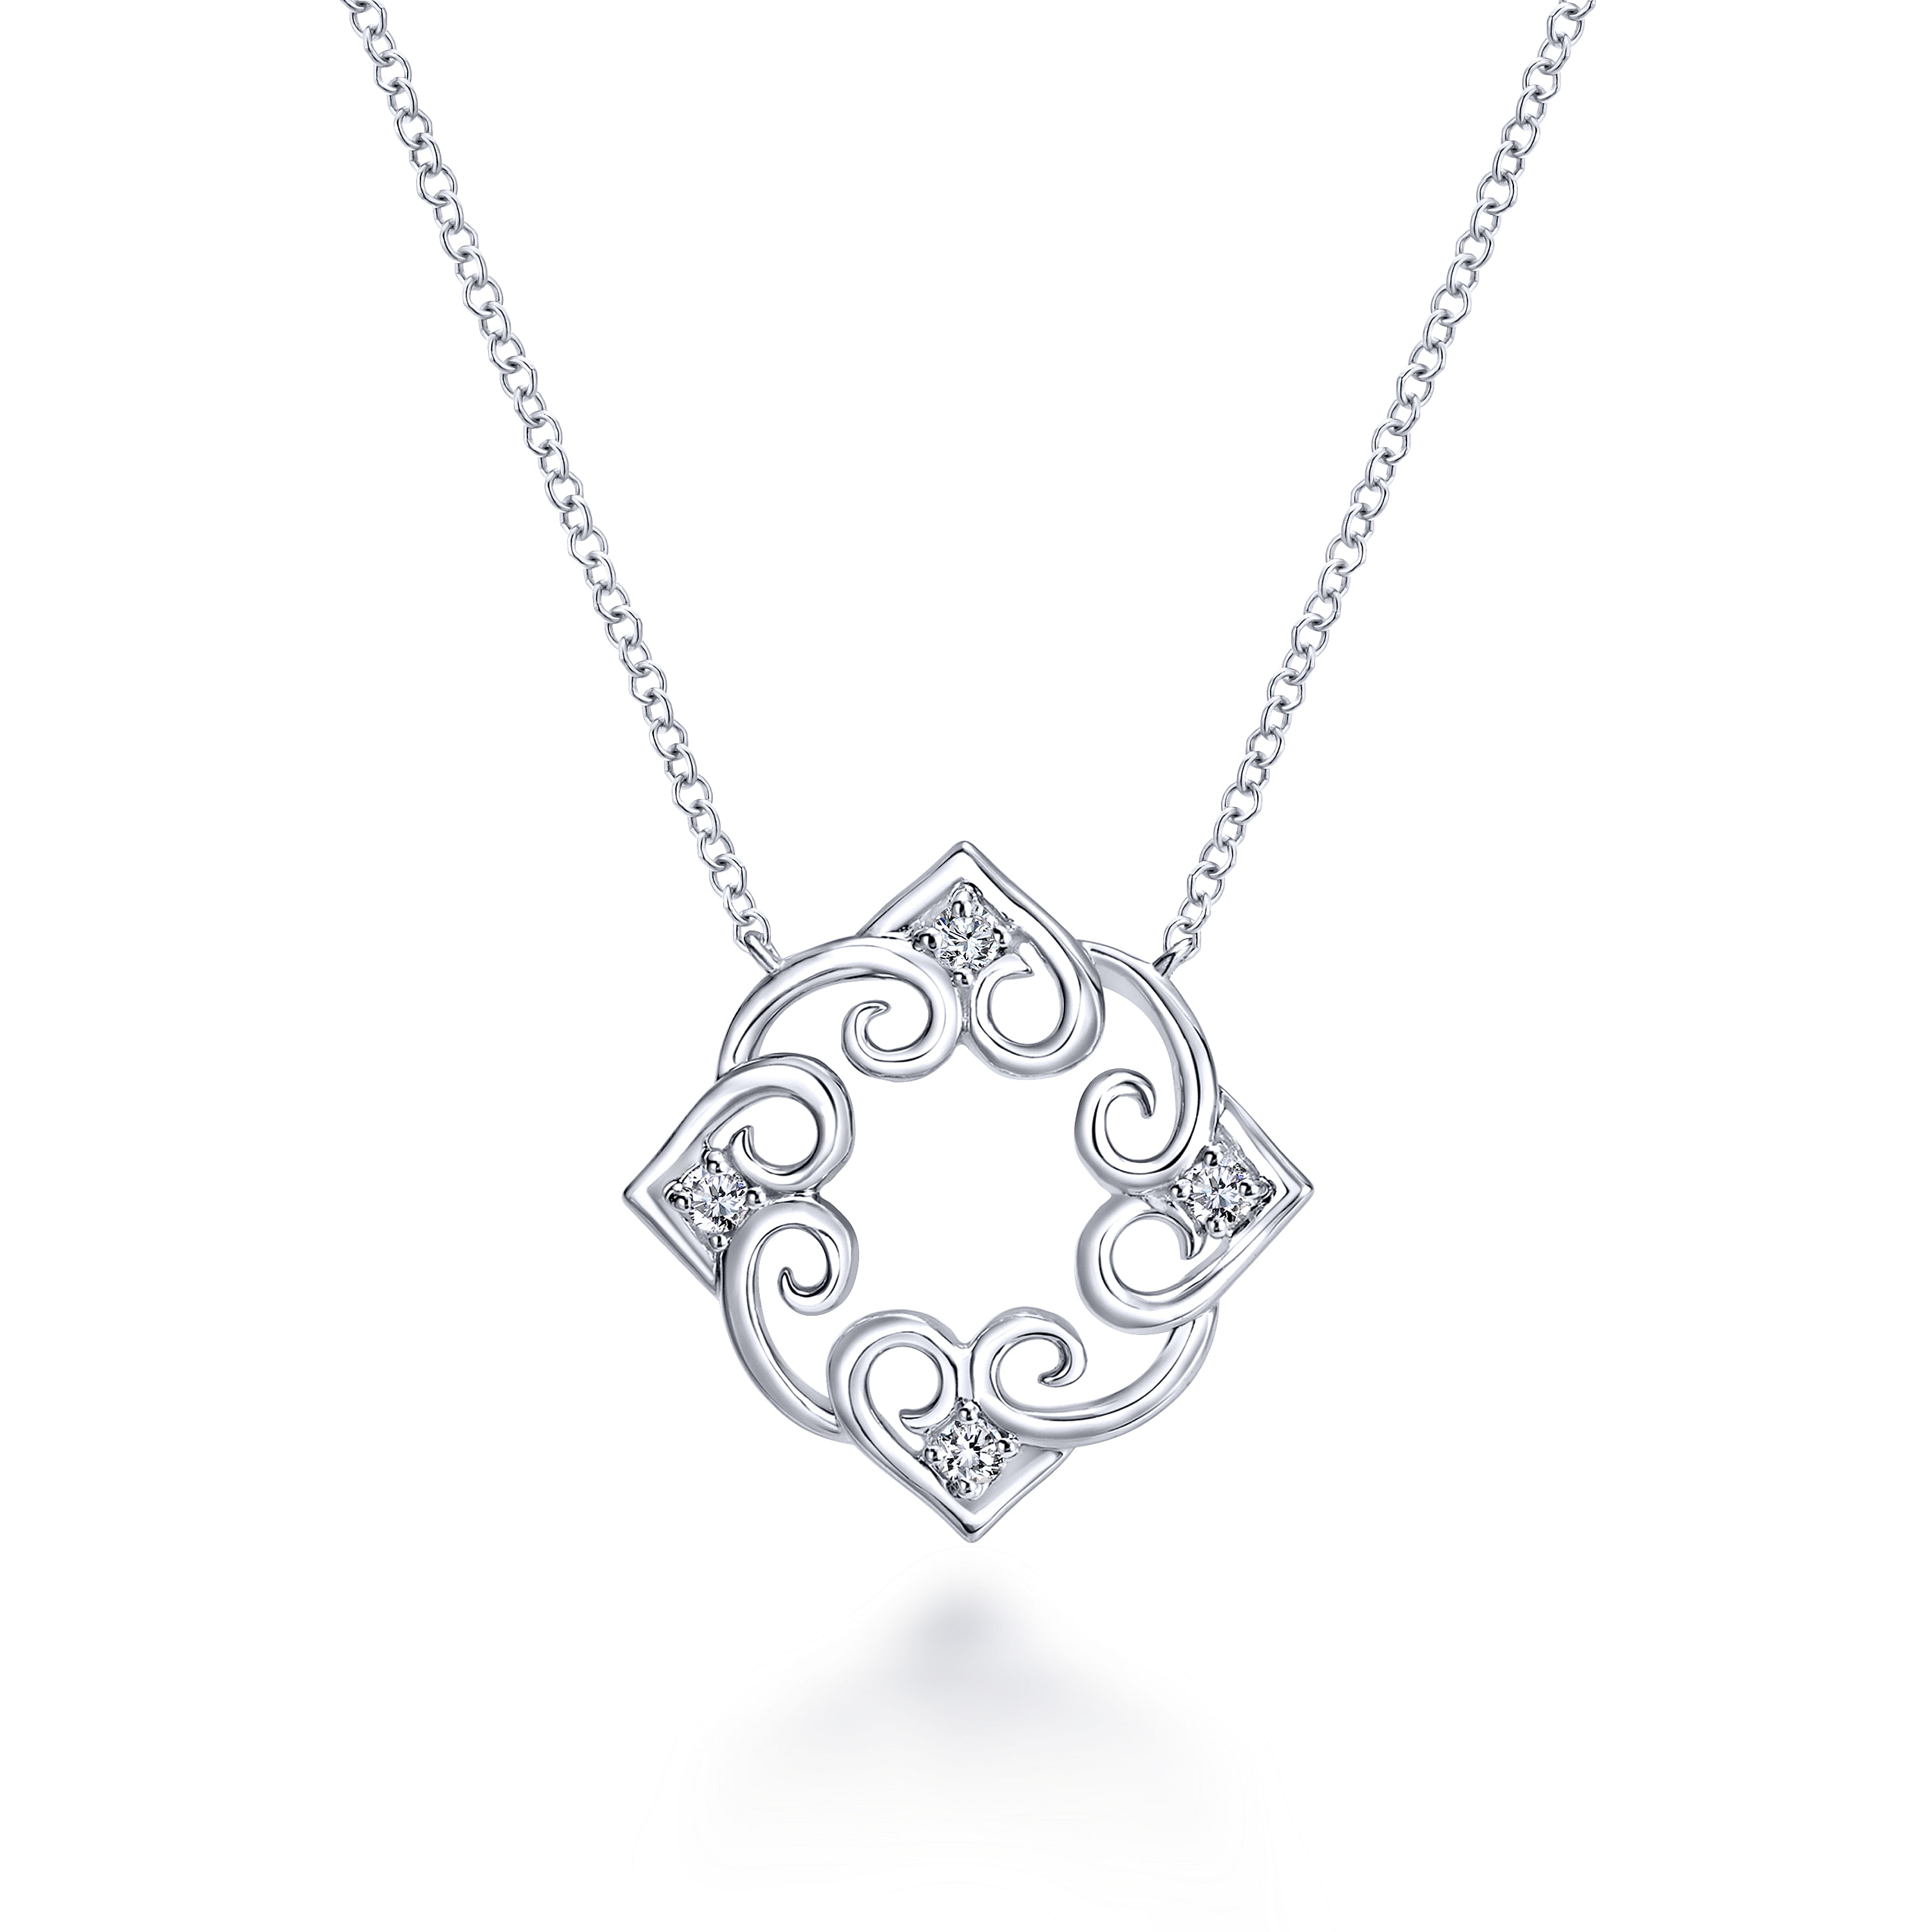 18 inch 925 Sterling Silver Swirling Open Work Diamond Heart Pendant Necklace